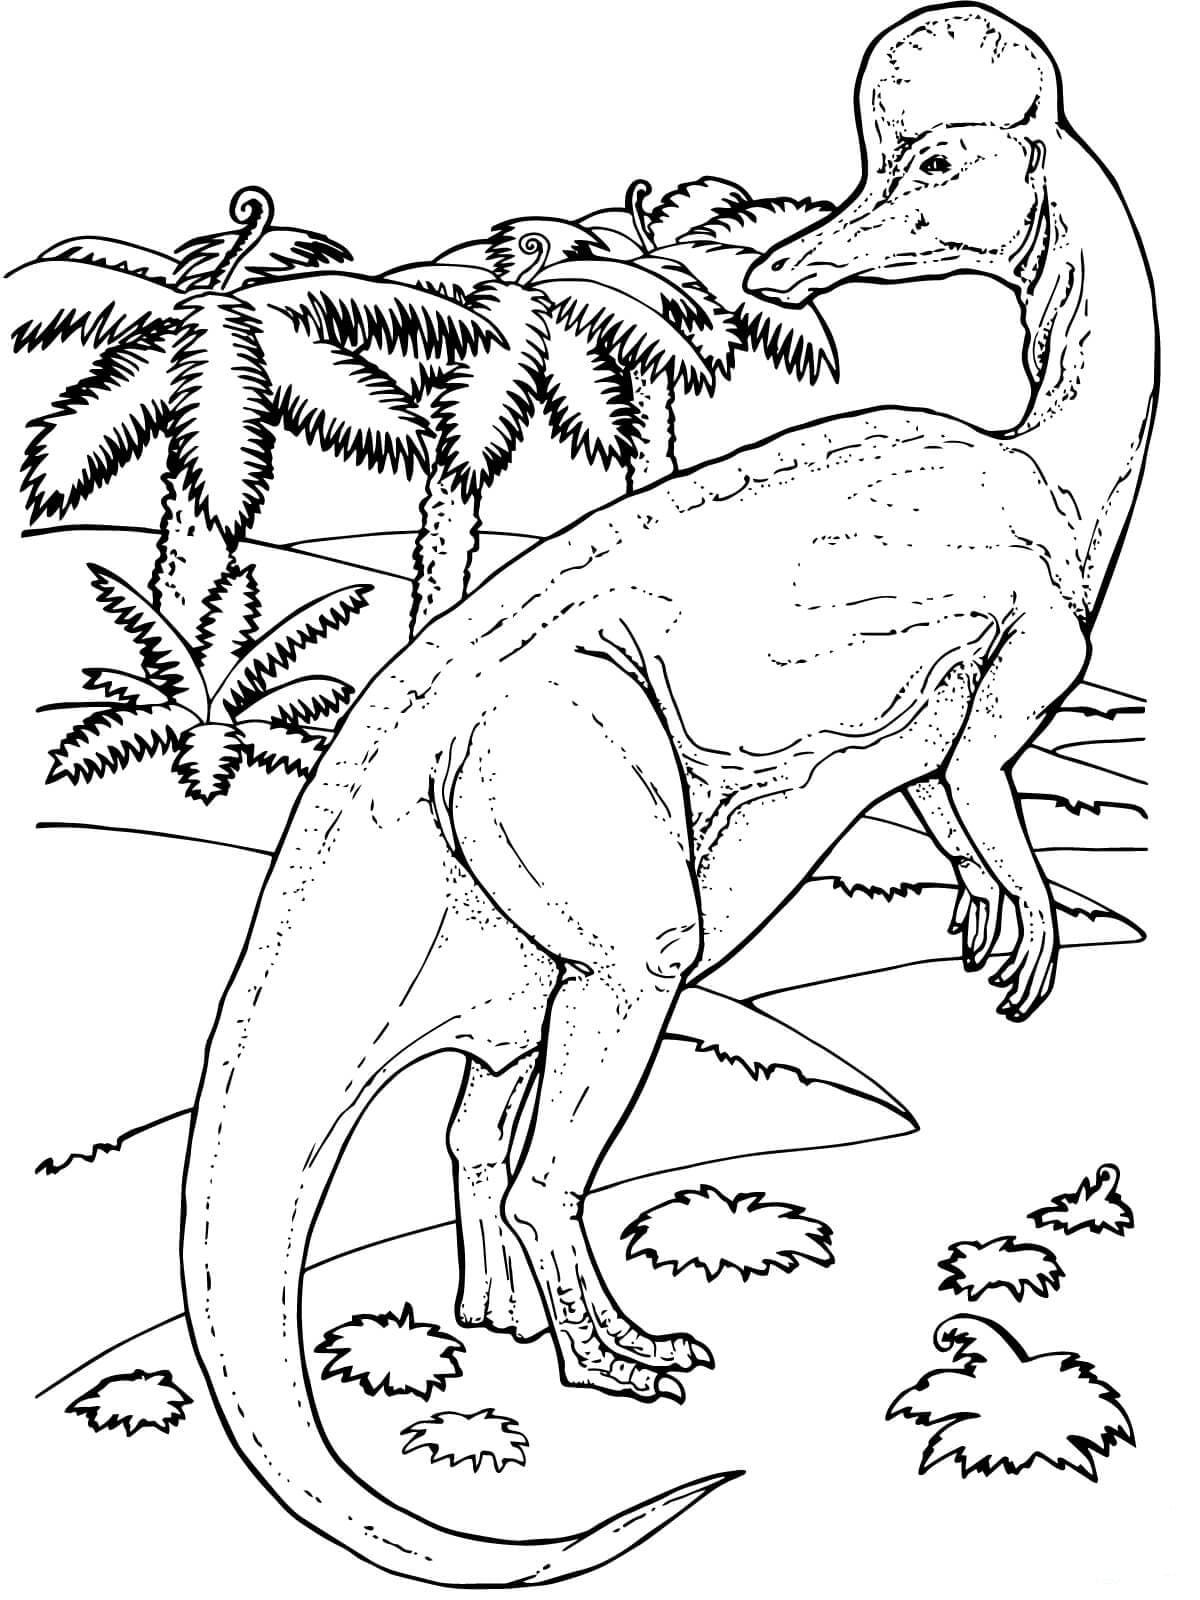 Disegni di Dinosauri da colorare - Grande collezione, stampa gratuita